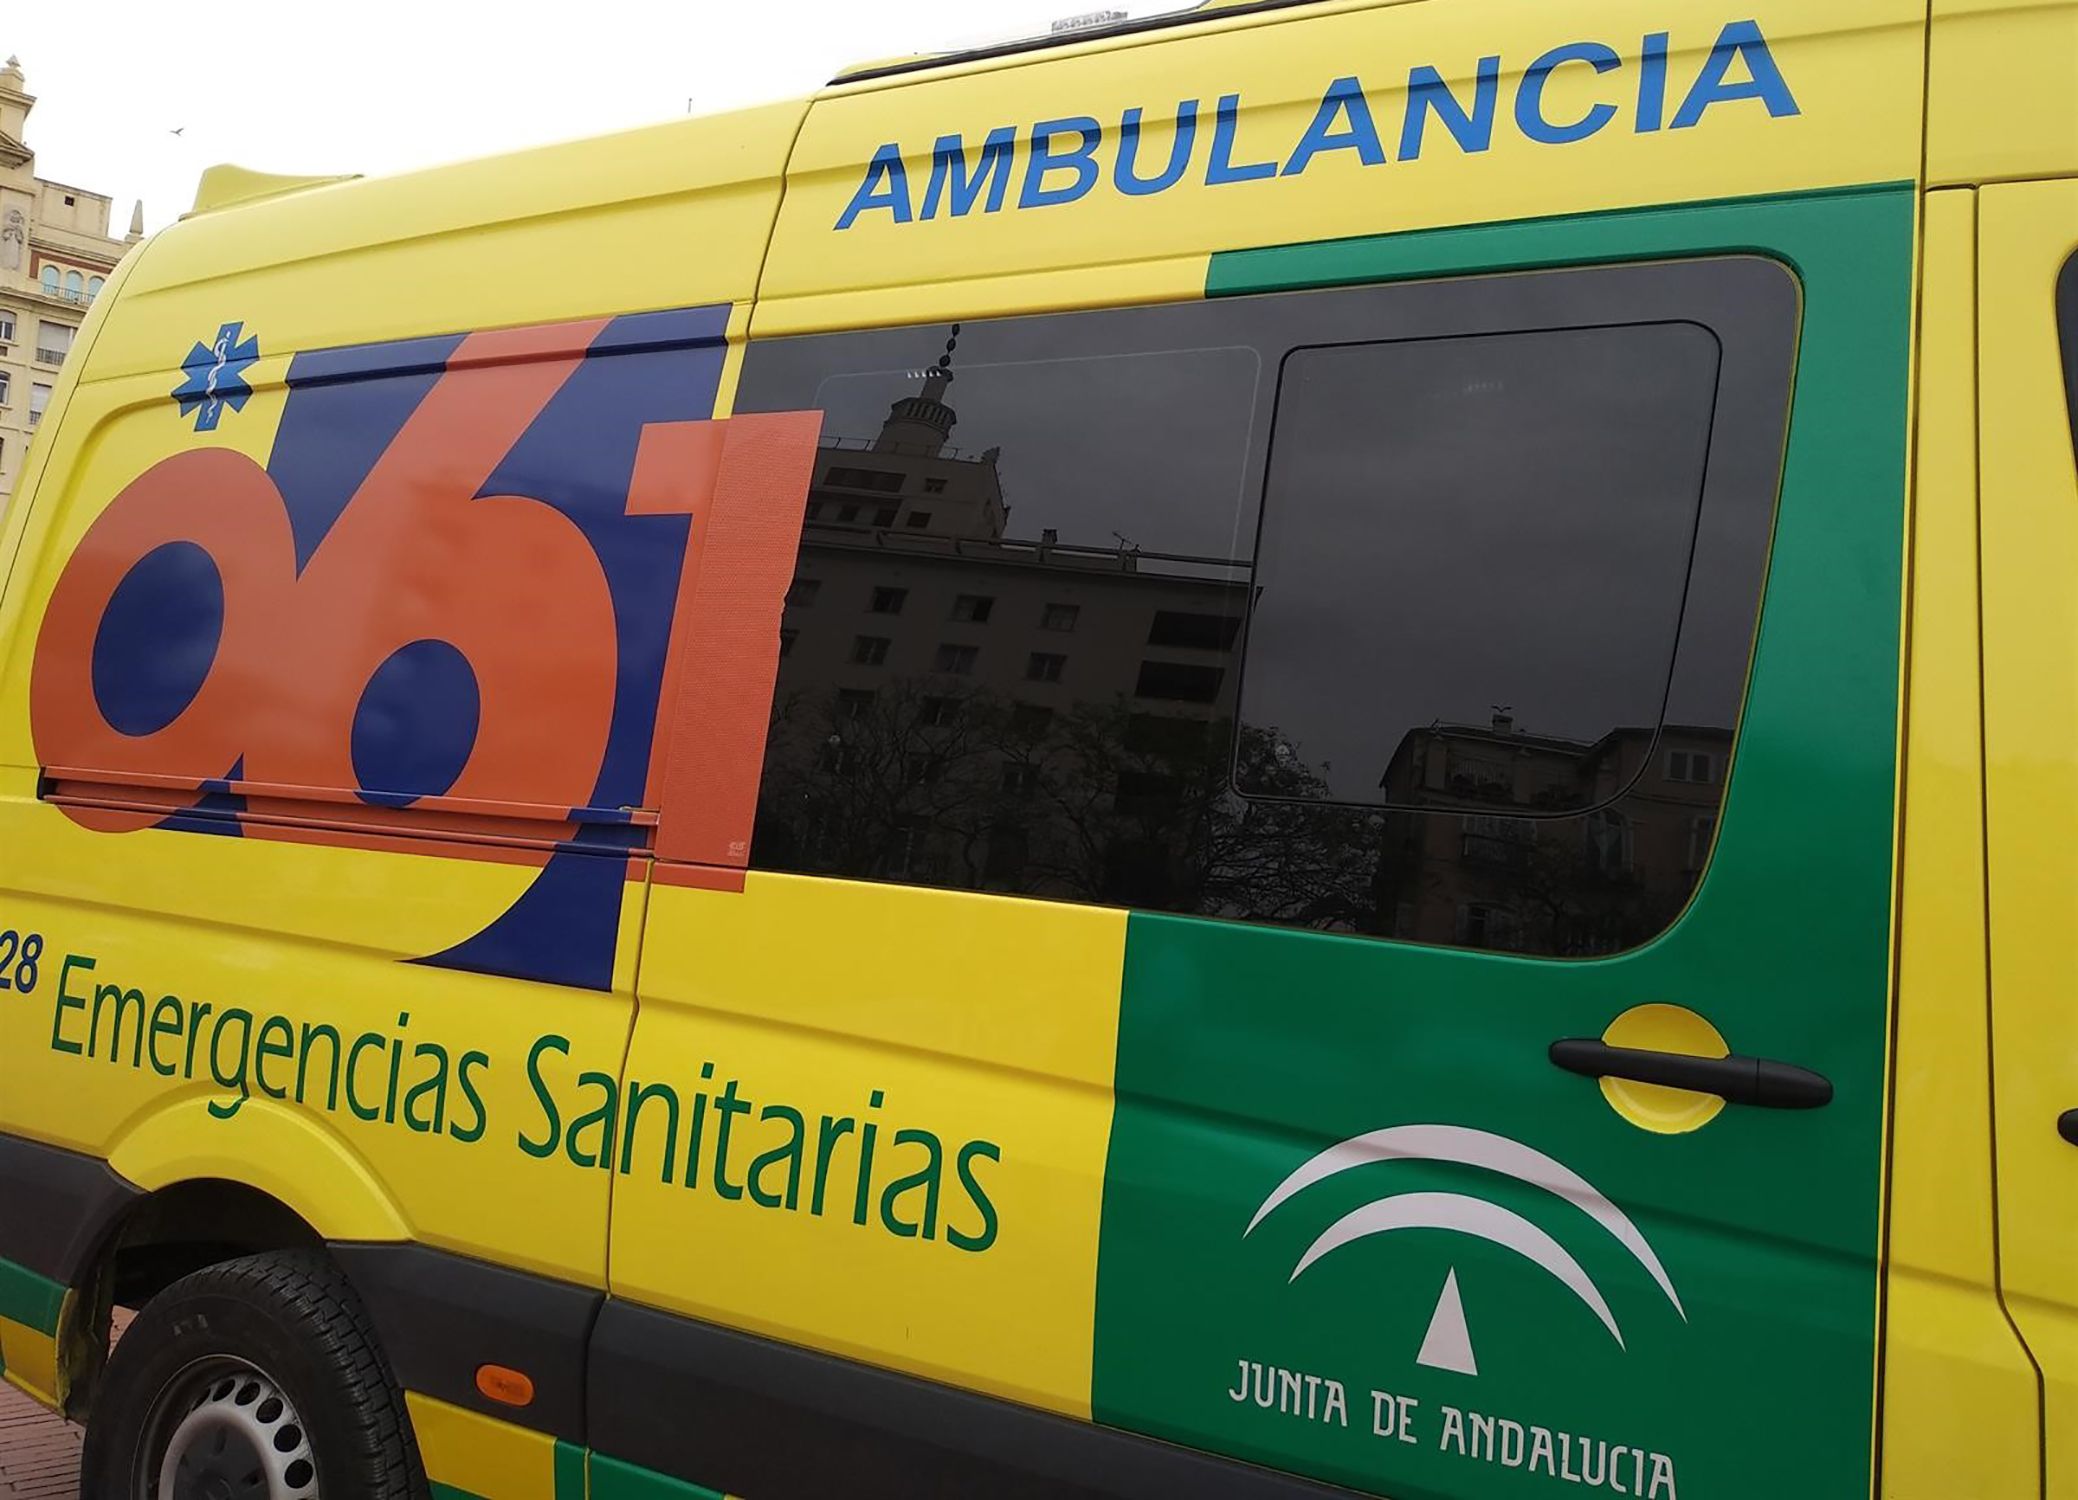 Ambulància 061 Andalusia